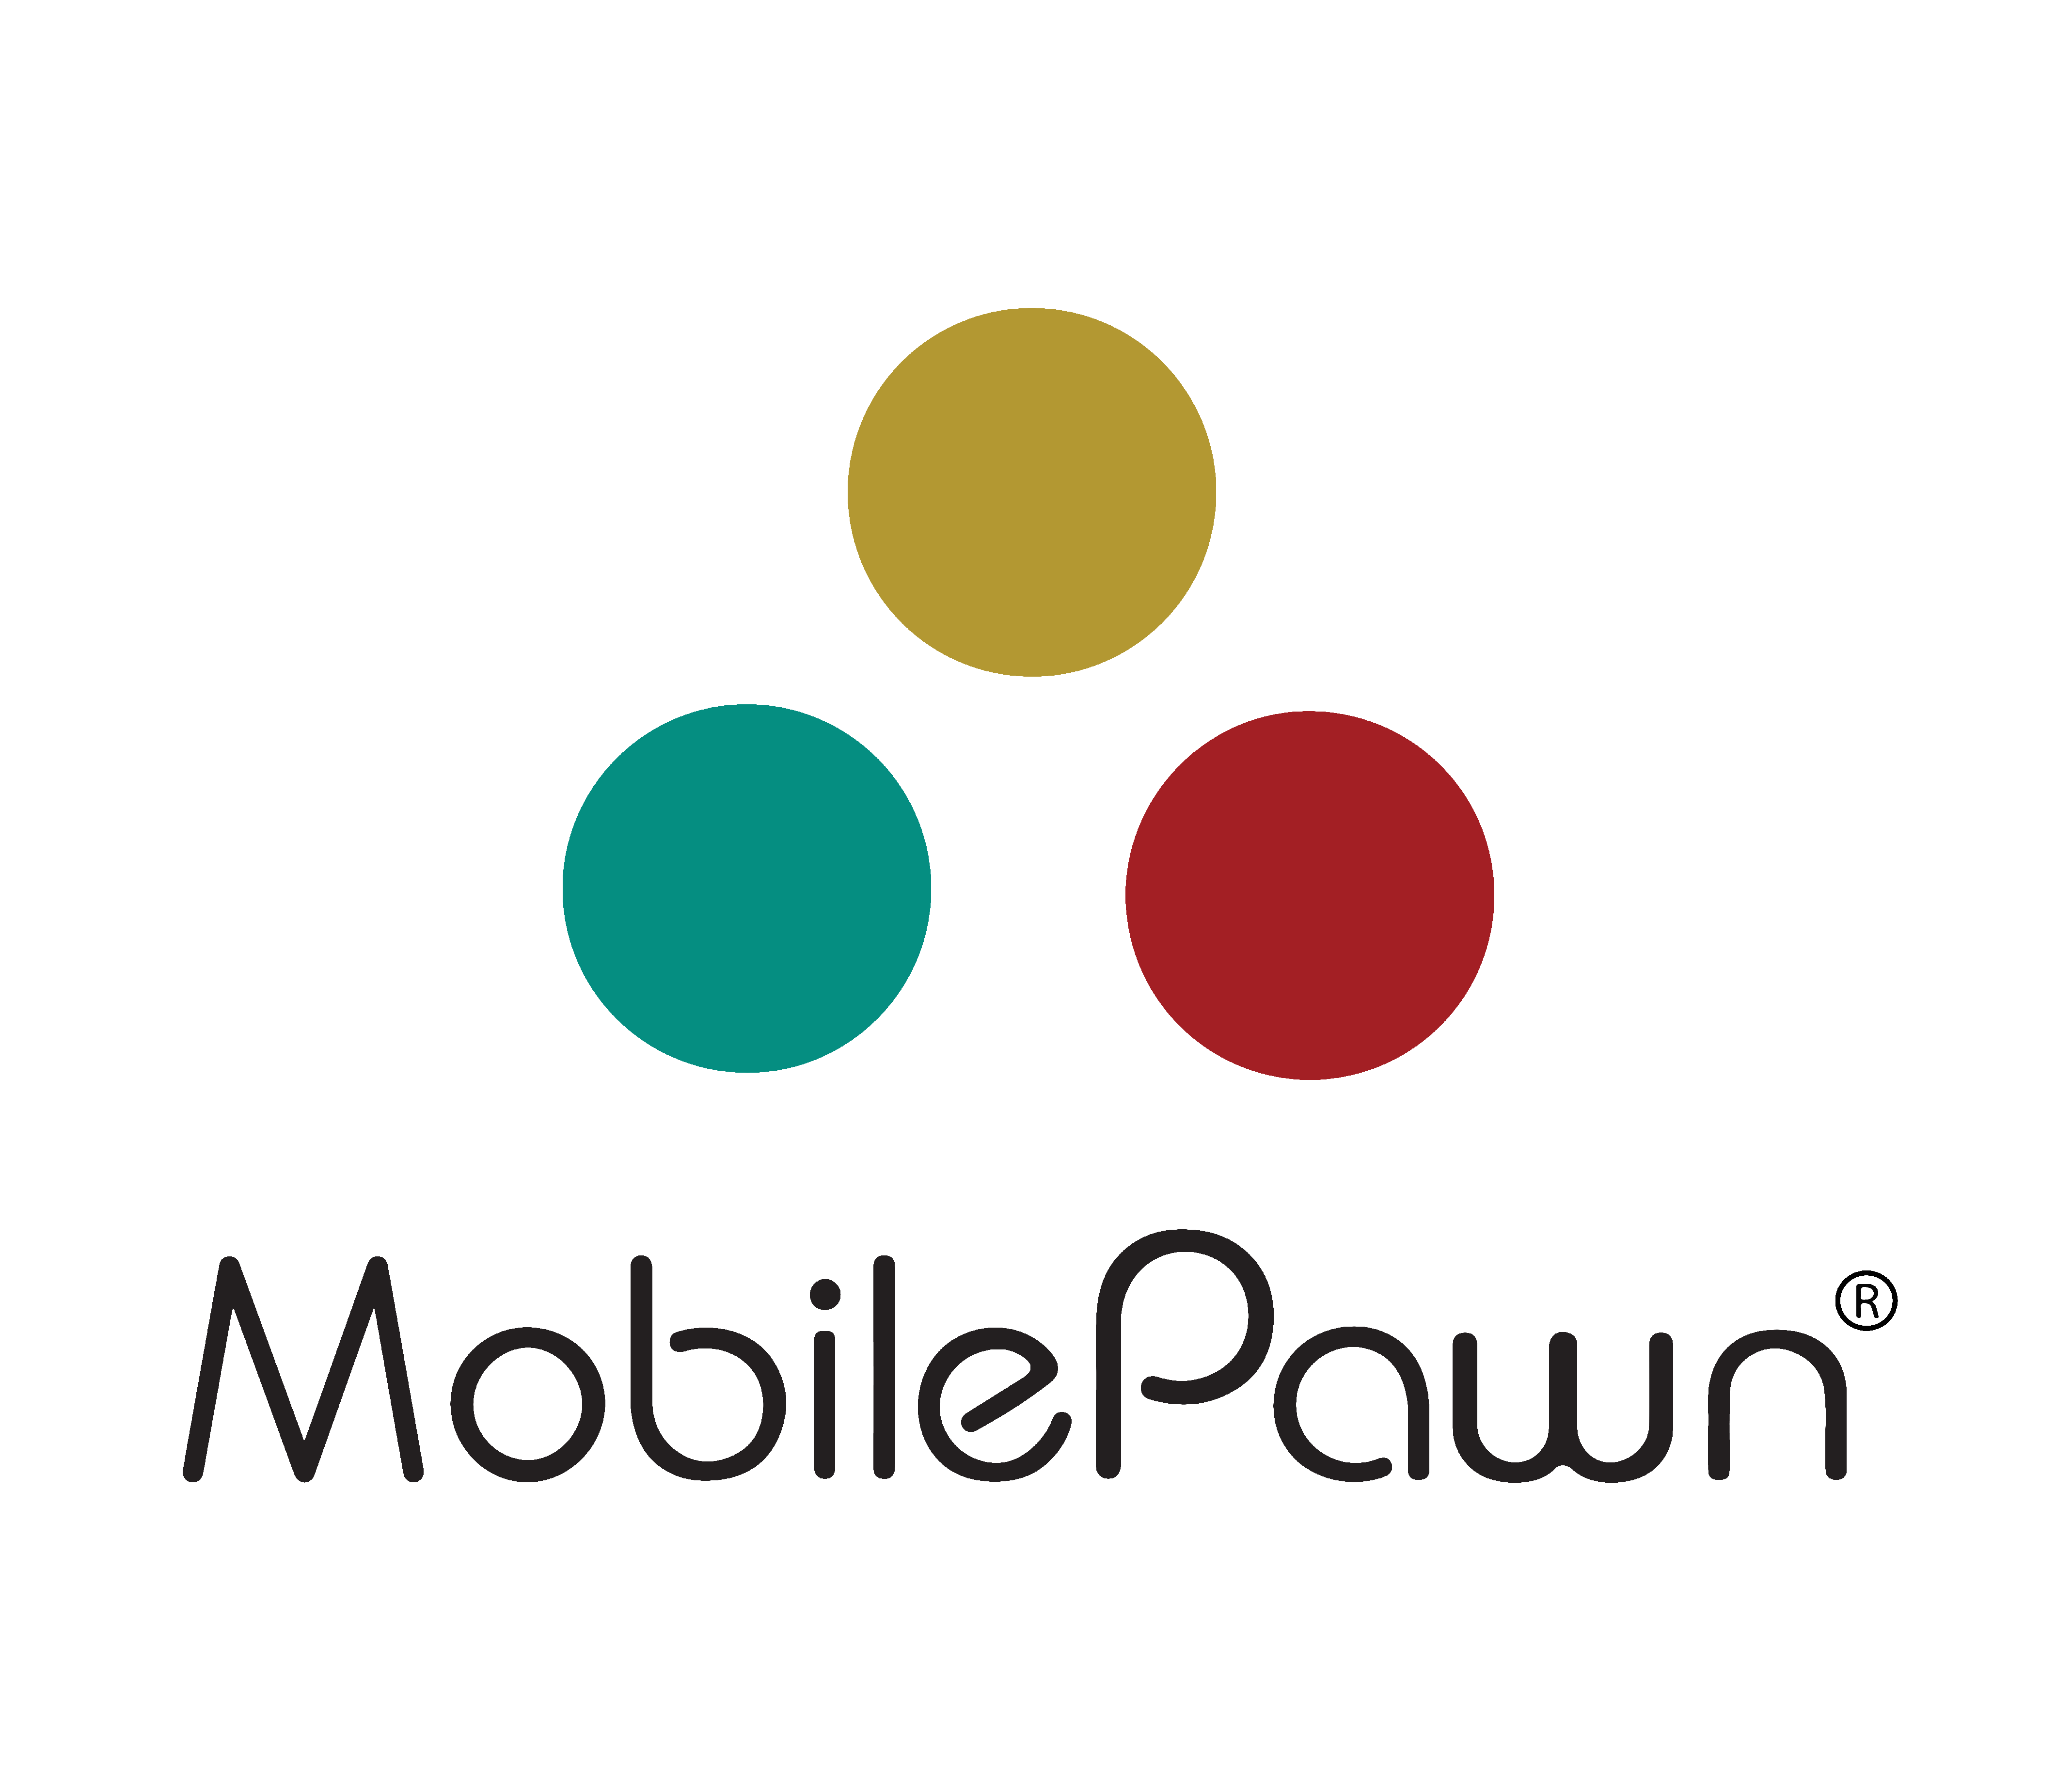 Mobile Pawn  Dan's Discount